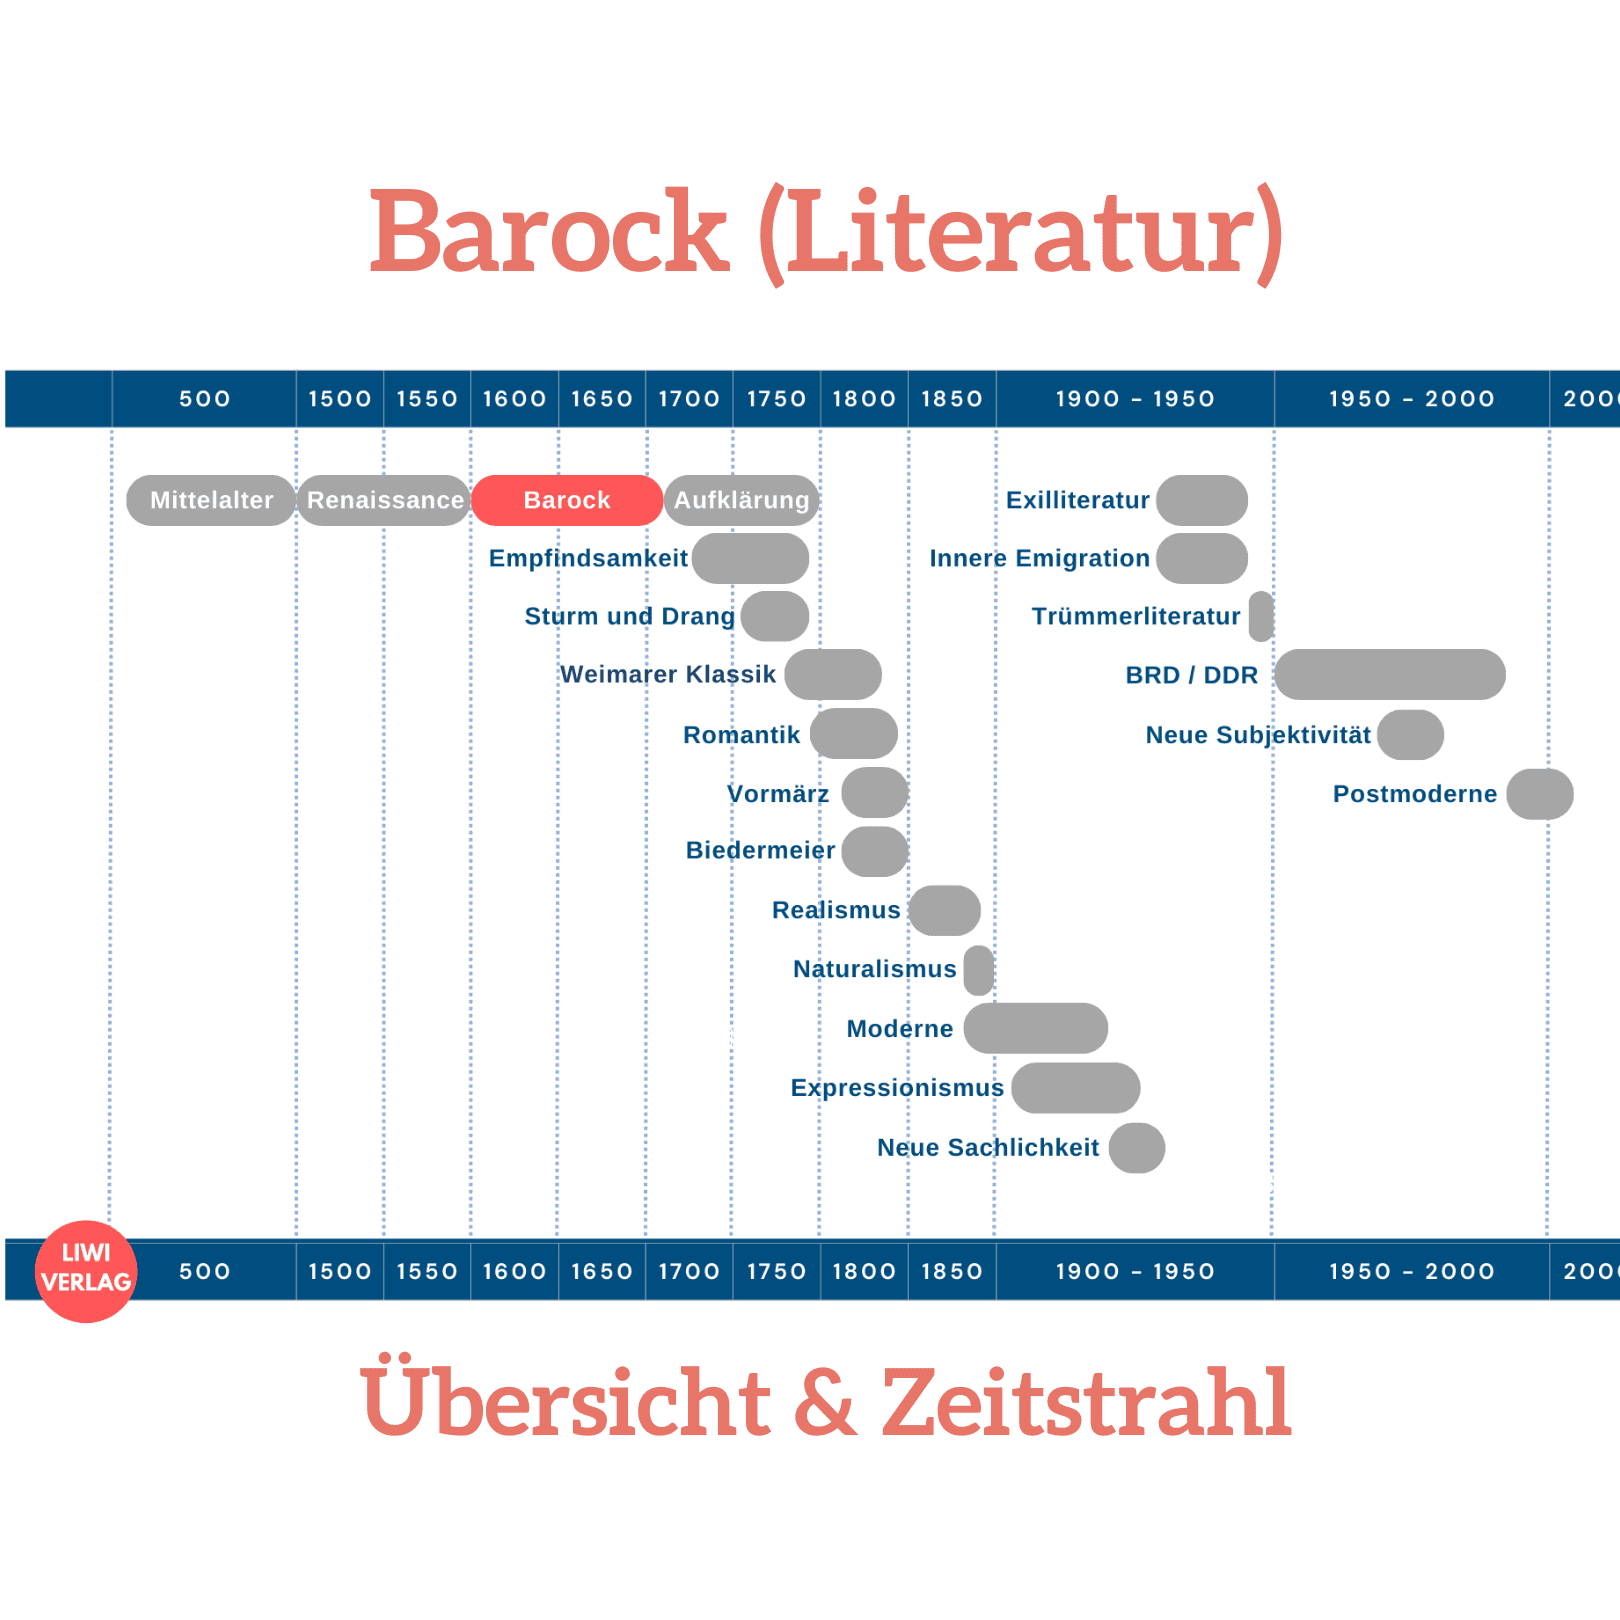 Barock-Literatur Zeitstrahl